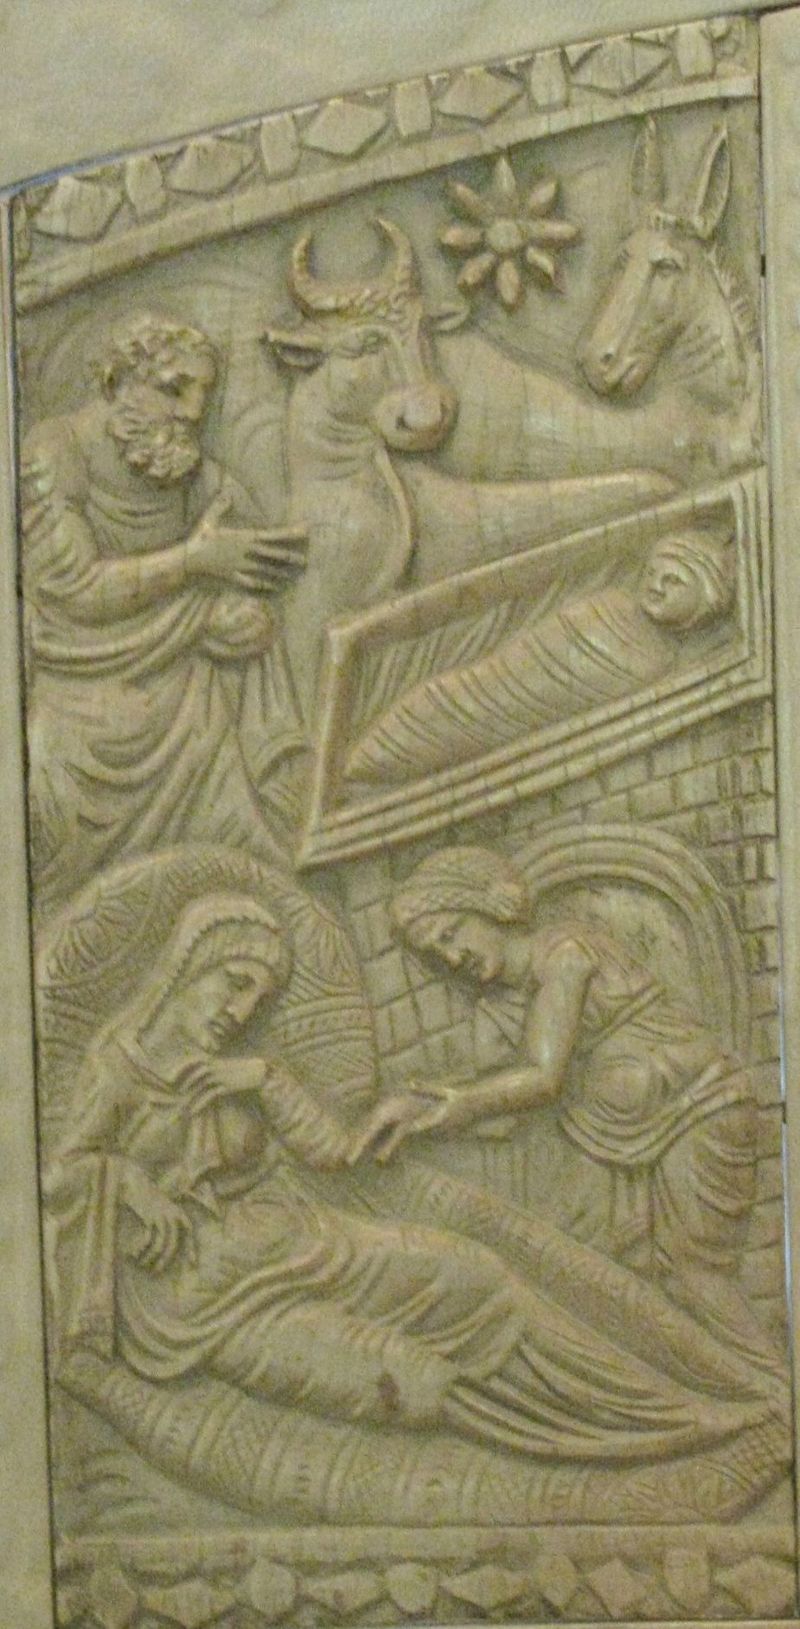 8_Саломея_Саломея с отсохшей рукой (кафедра Максимиана, слоновая кость, 550 год)